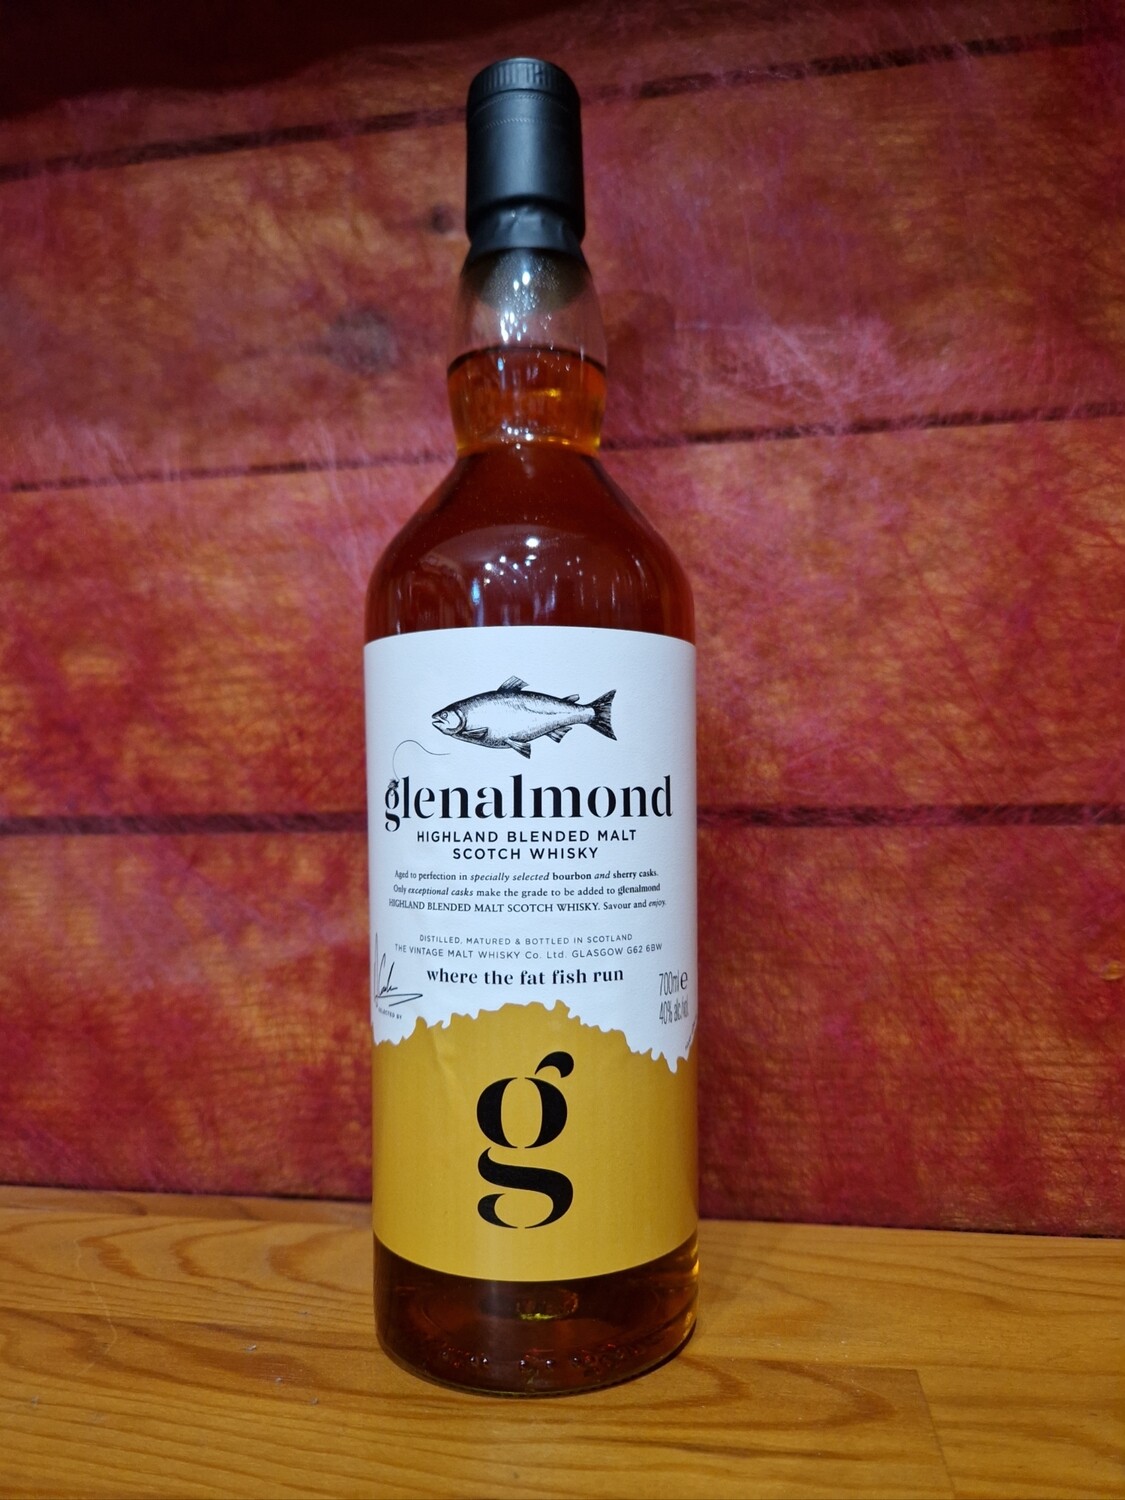 Glenalmond highland blended malt